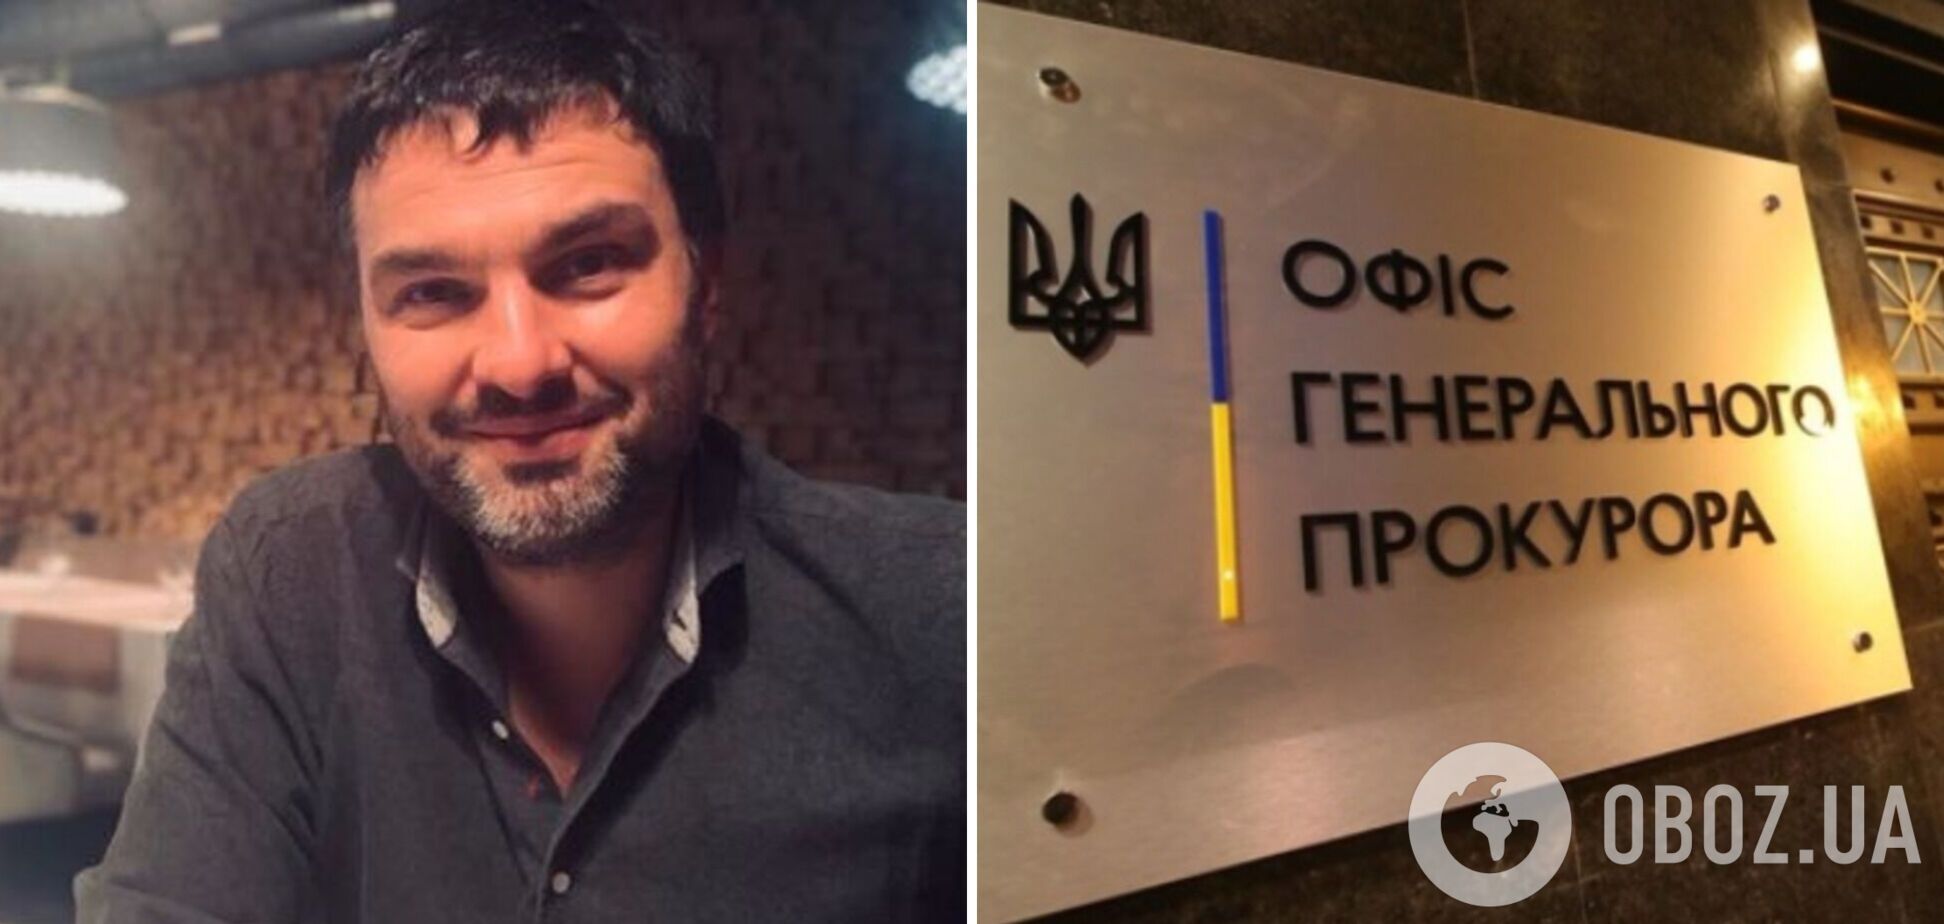 Офис генпрокурора объявил подозрение Дмитрию Федотенкову, обвиняемому в причастности к рейдерству 'Укрбуда'